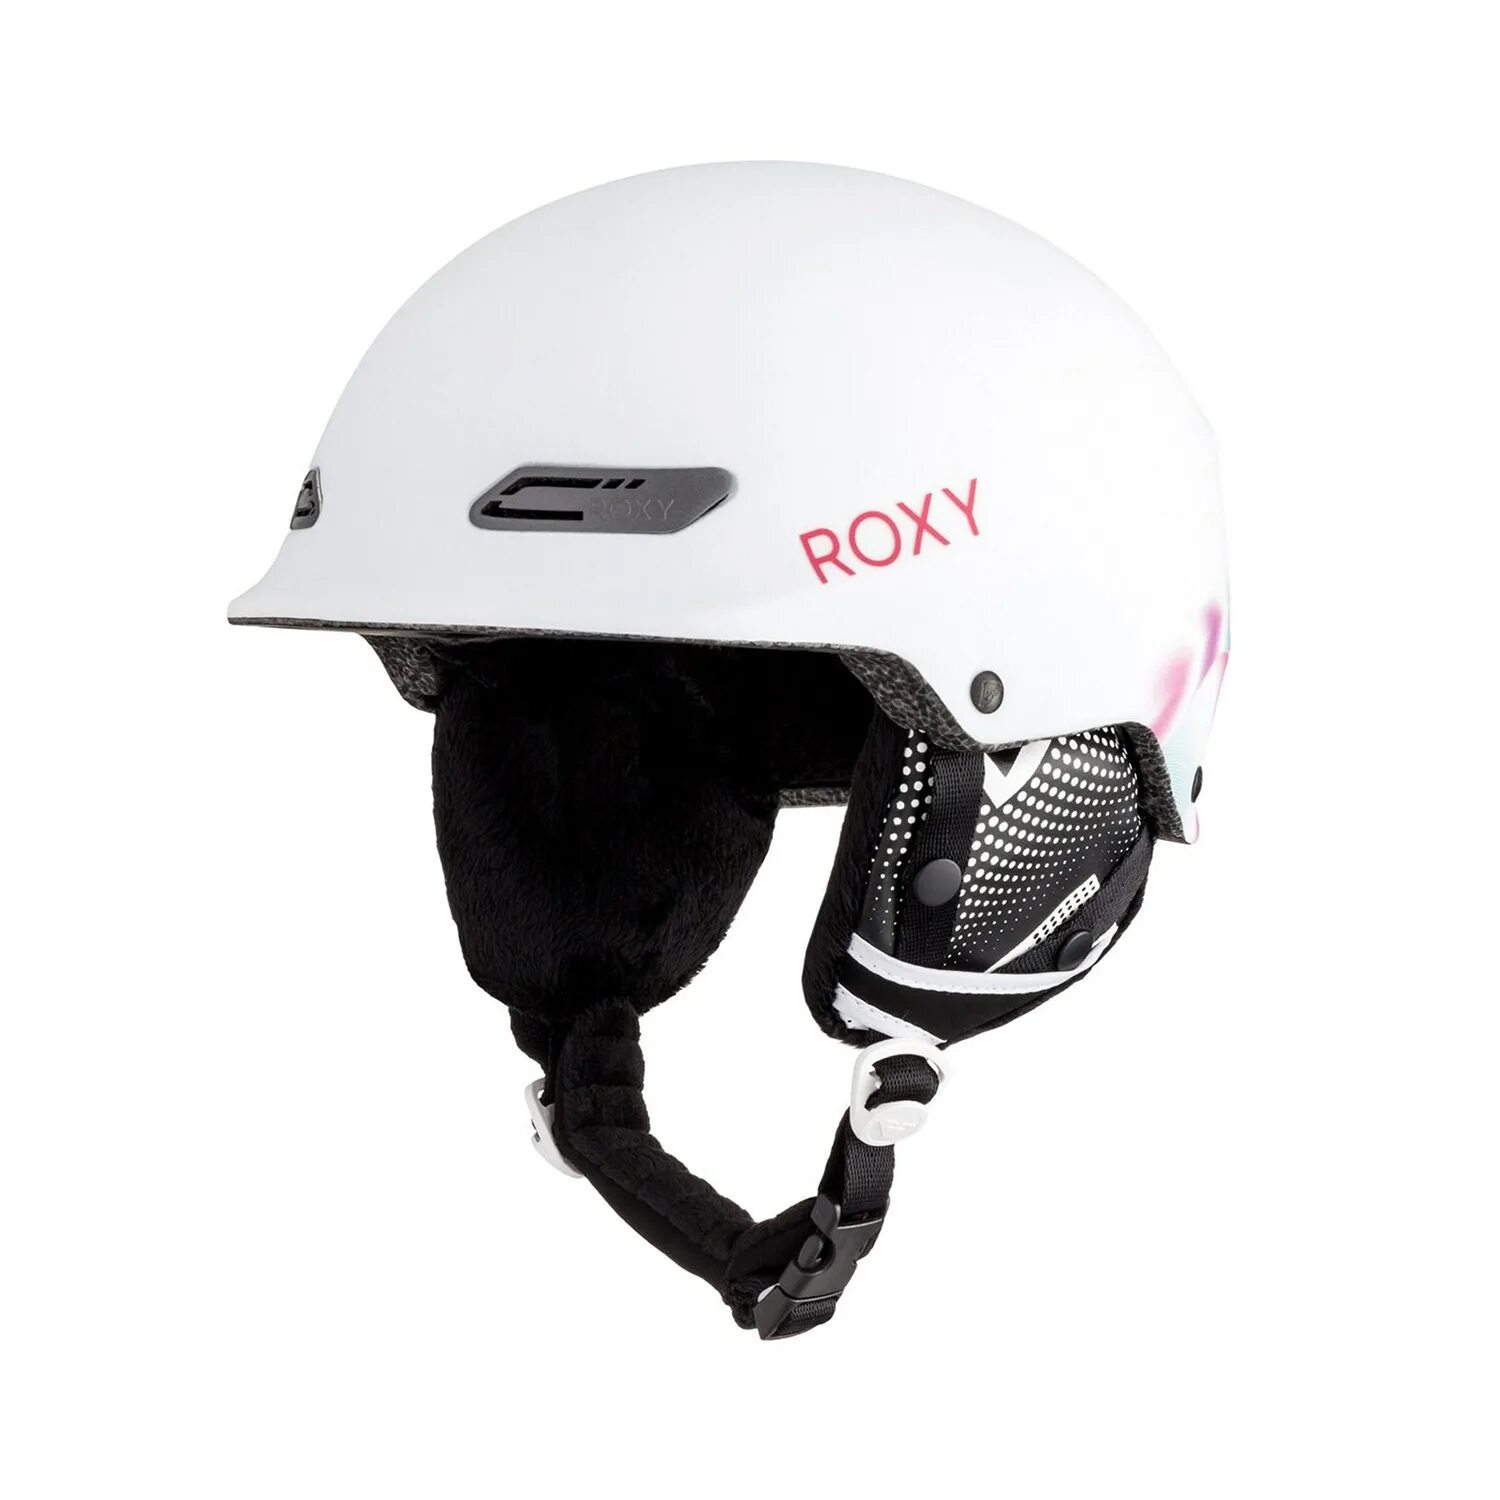 Шлем горнолыжный Roxy. Шлем Roxy Angie. FTWO шлем горнолыжный. Volant шлем горнолыжный. Купить горнолыжный шлем в москве